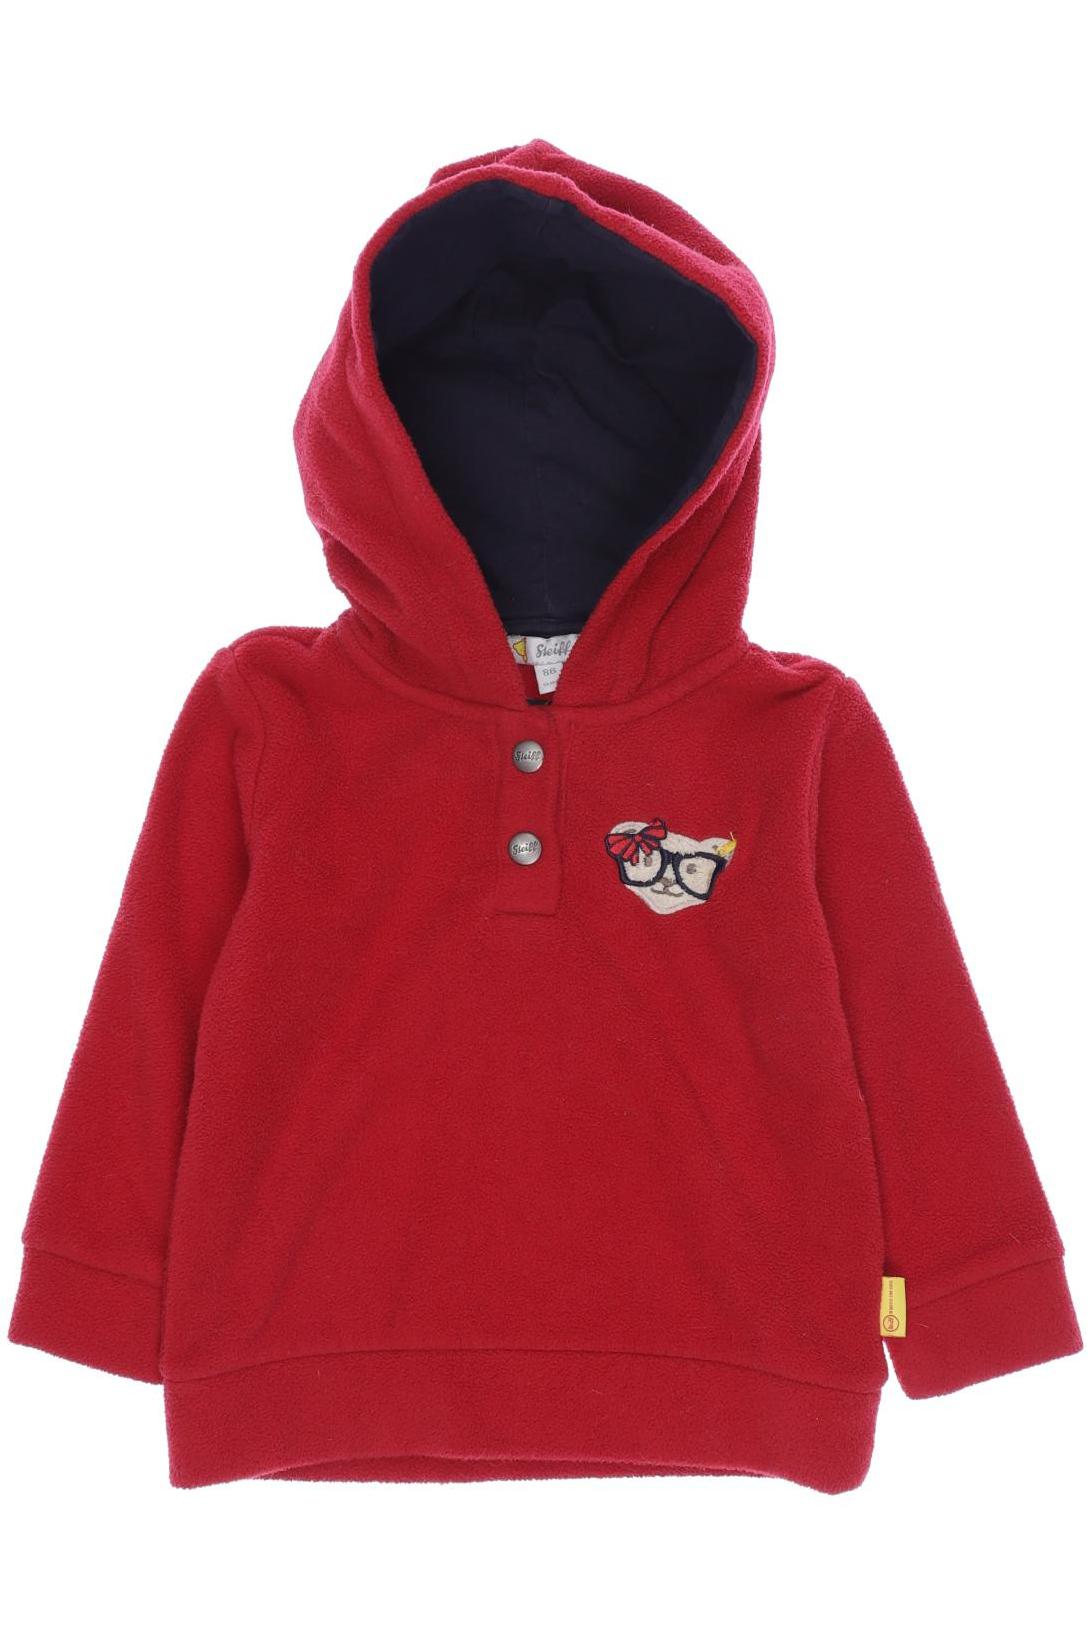 Steiff Damen Hoodies & Sweater, rot, Gr. 86 von Steiff